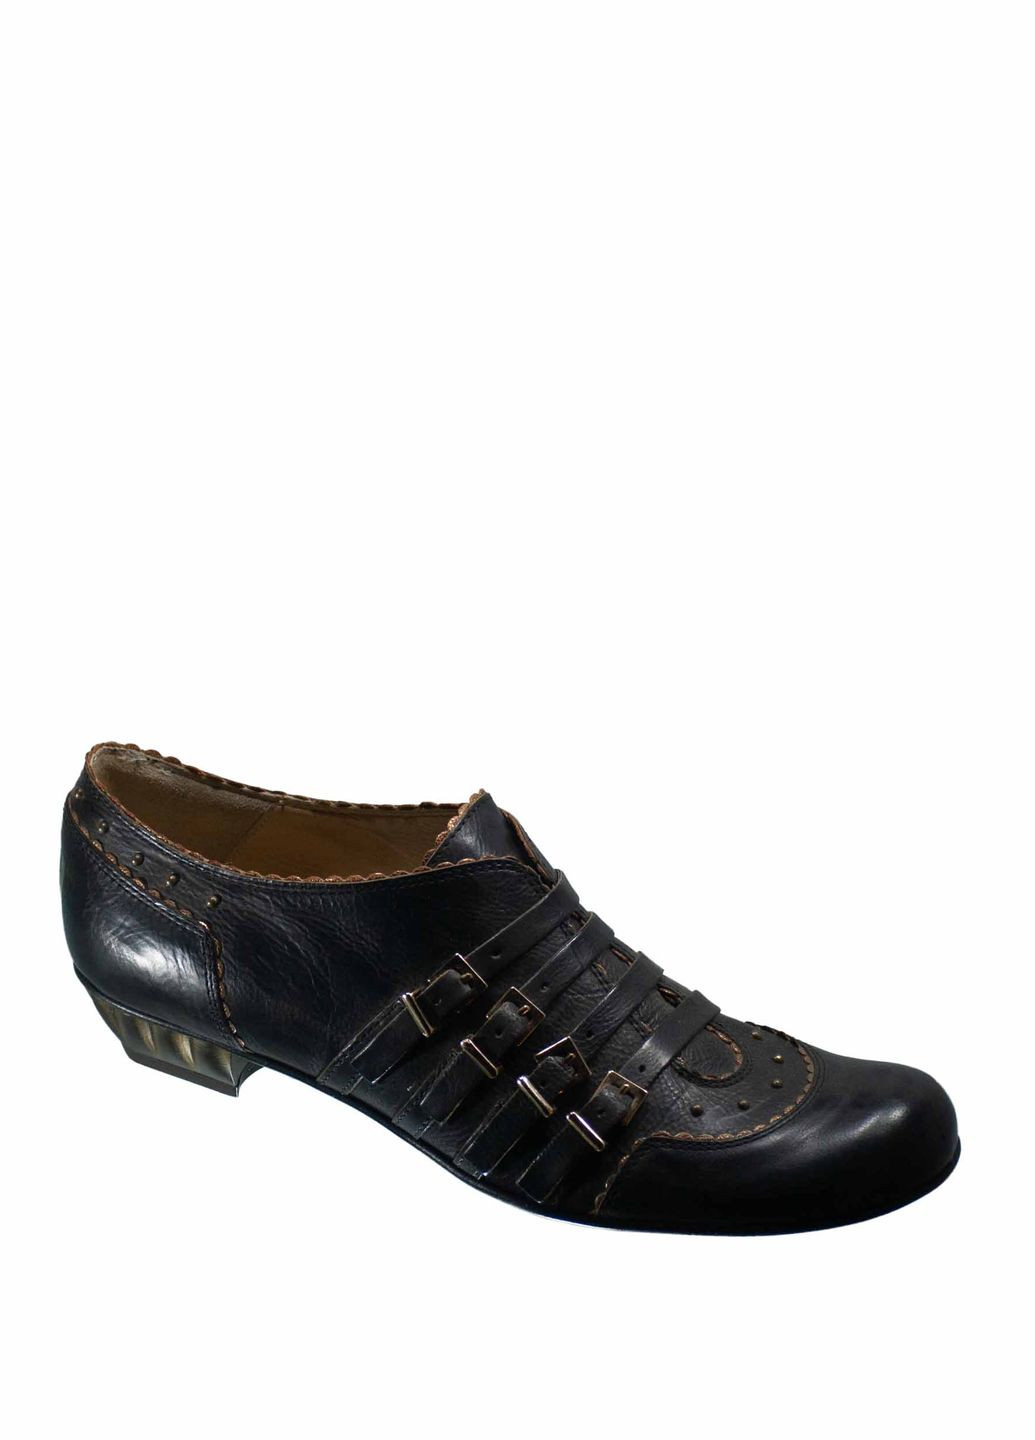 Туфли Lino Marini на среднем каблуке с пряжкой